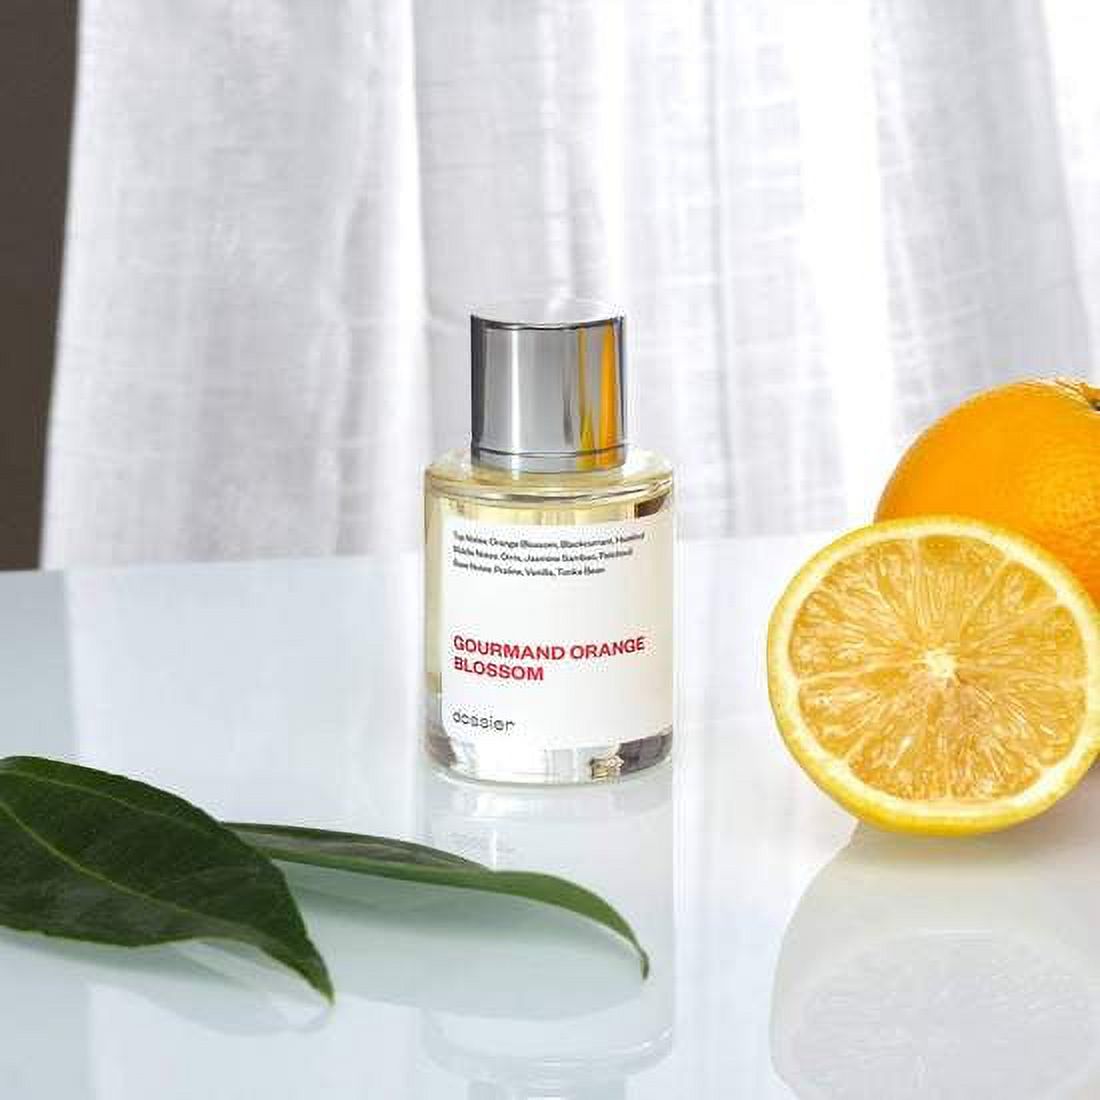 Gourmand Orange Blossom Inspired By Lancome's La Vie Est Belle Eau De Parfum, Perfume for Women. Size: 50ml / 1.7oz - image 5 of 5